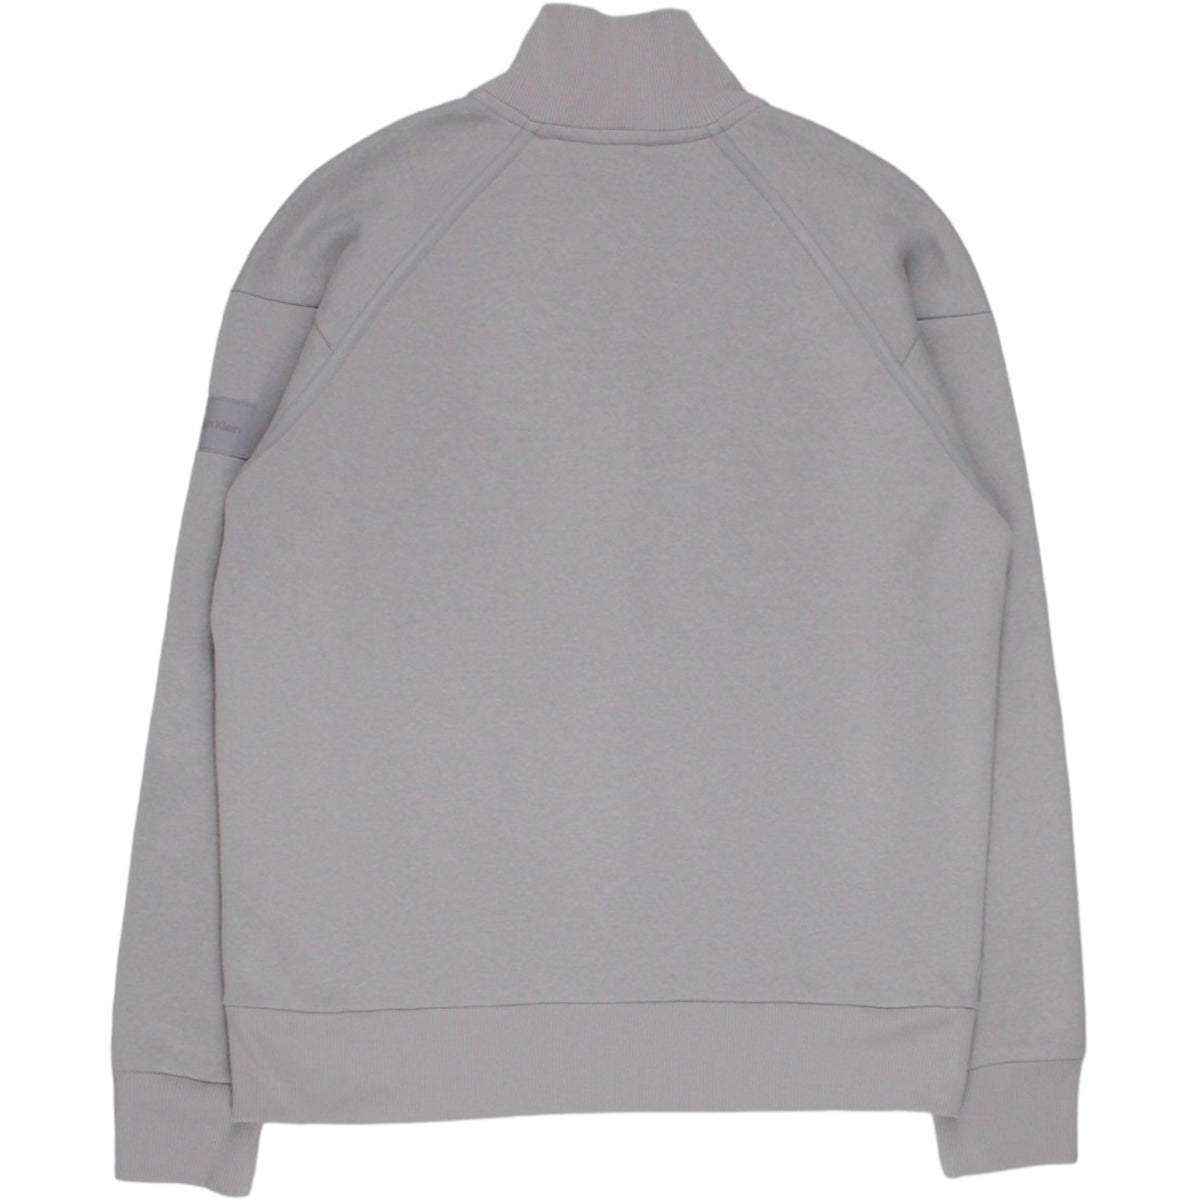 Calvin Klein Grey 1/4 Zip Sweatshirt